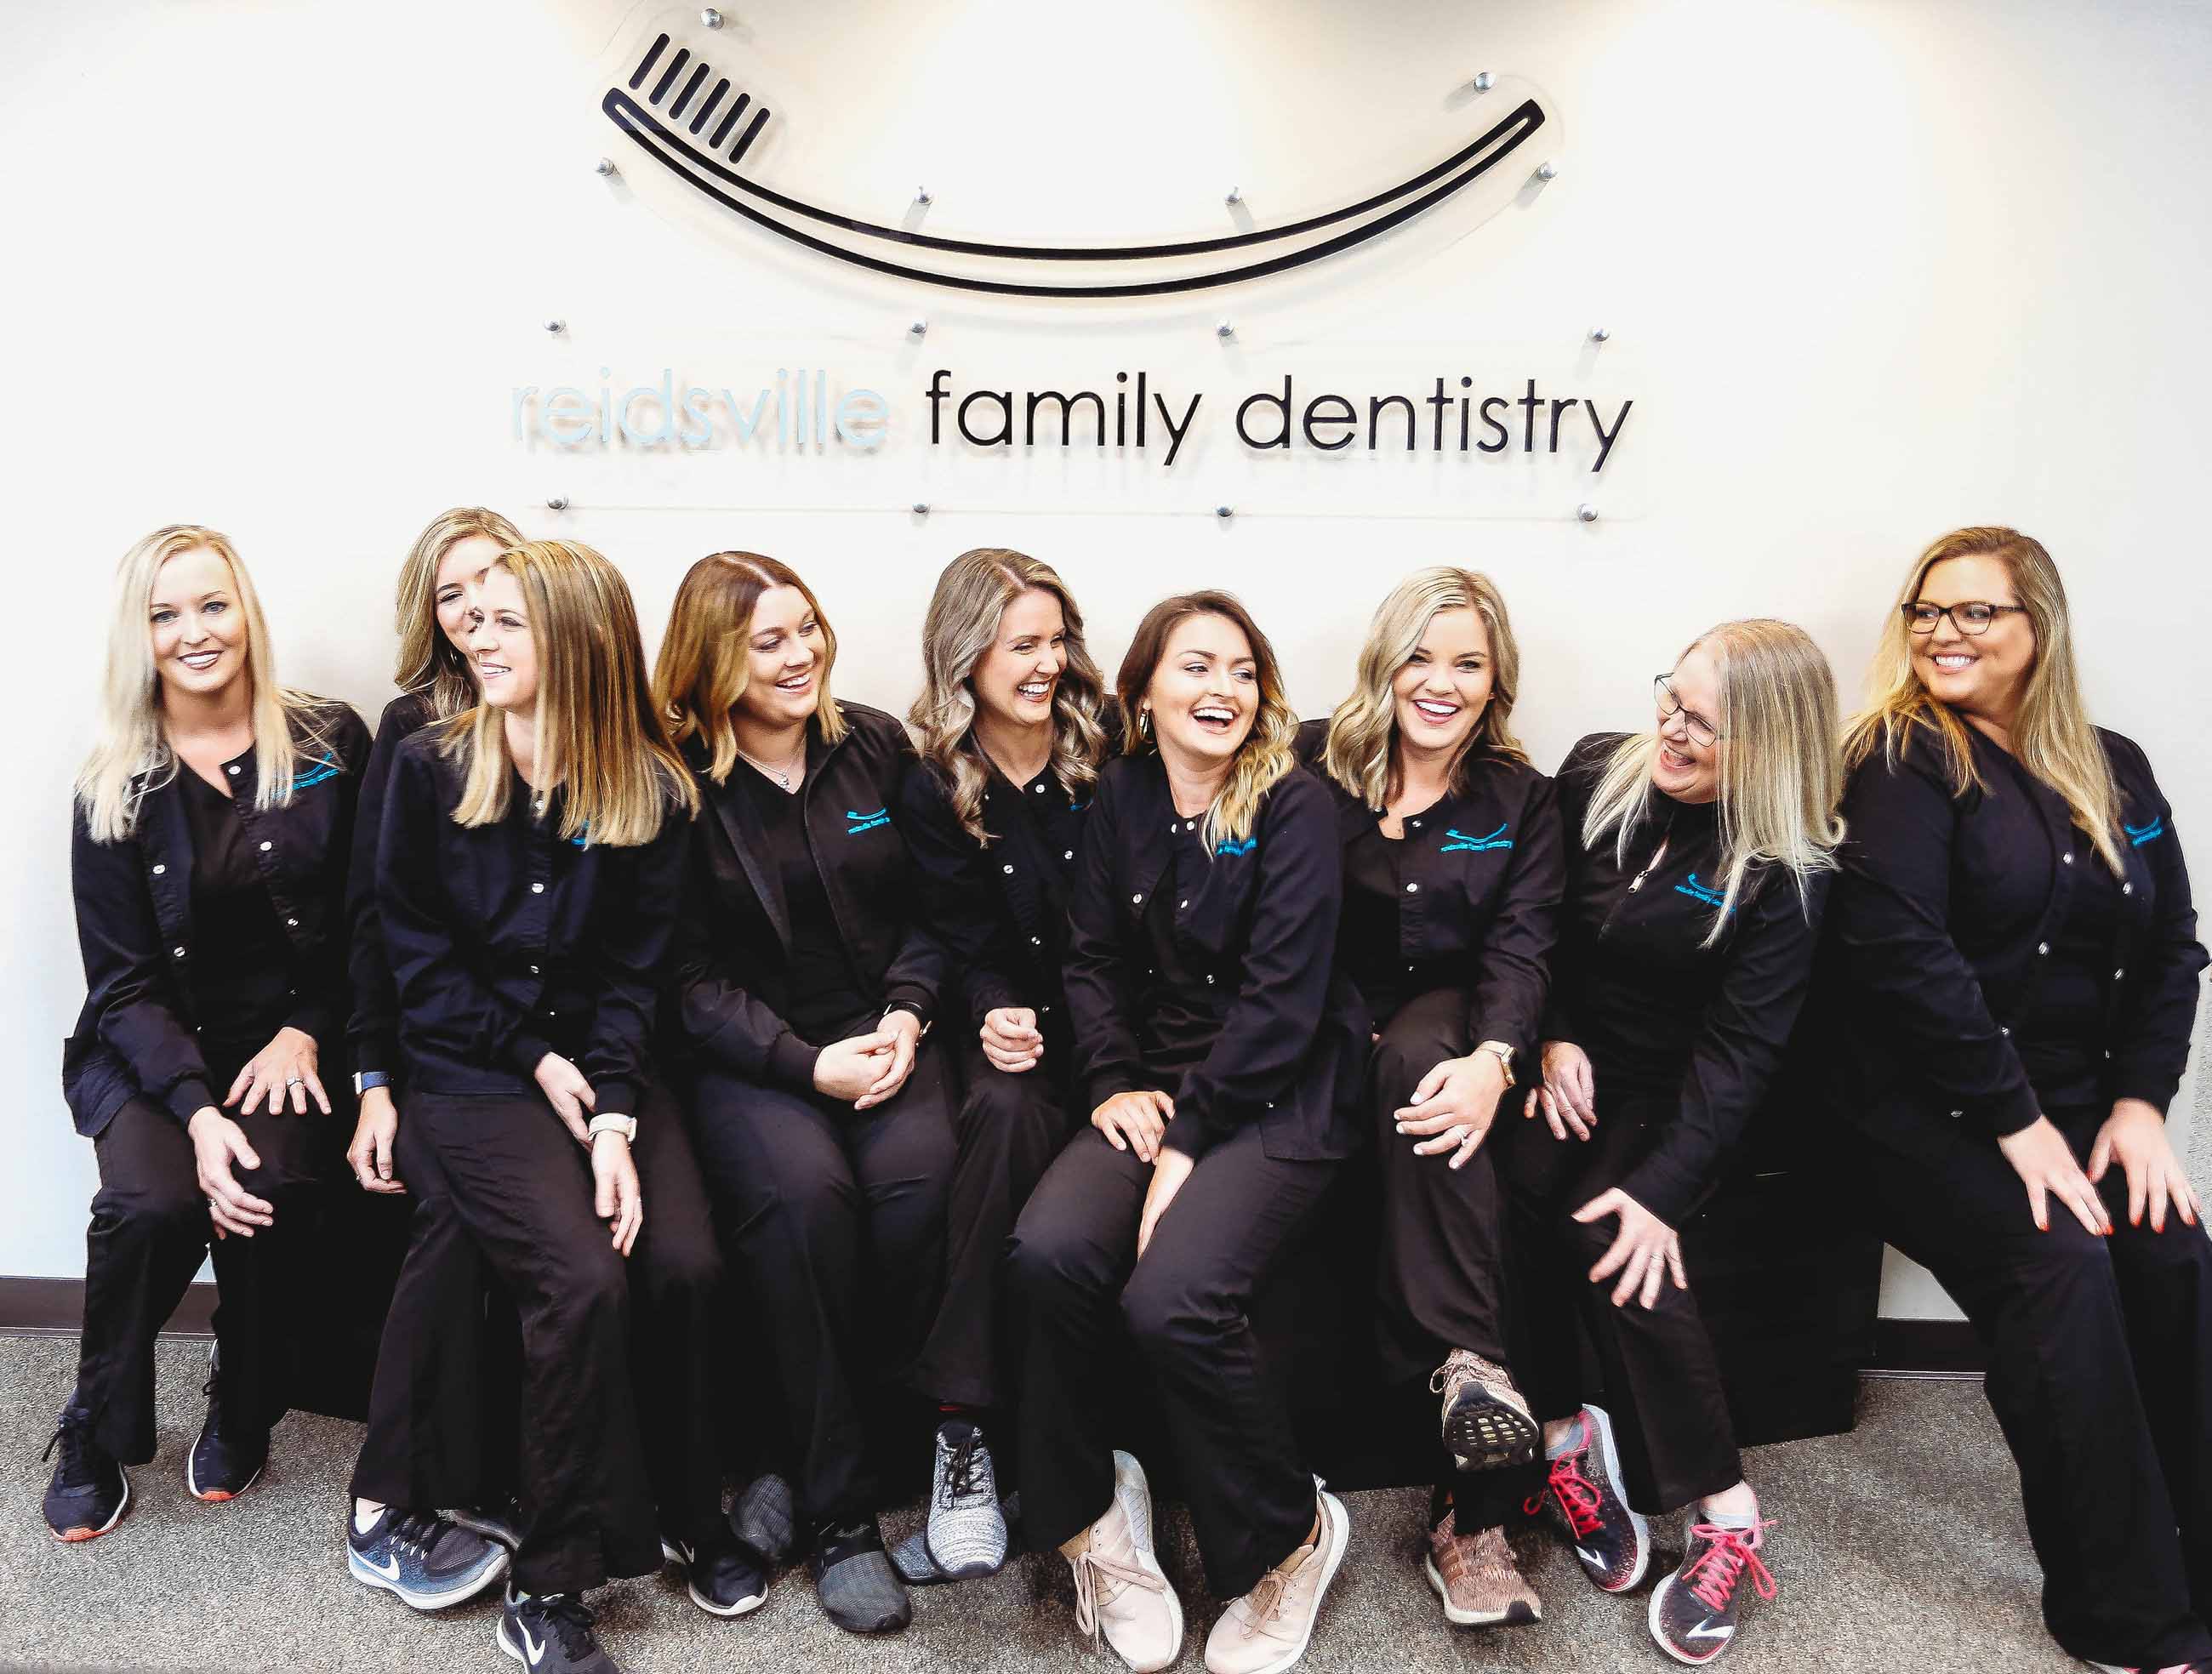 Reidsville Family Dentistry Team